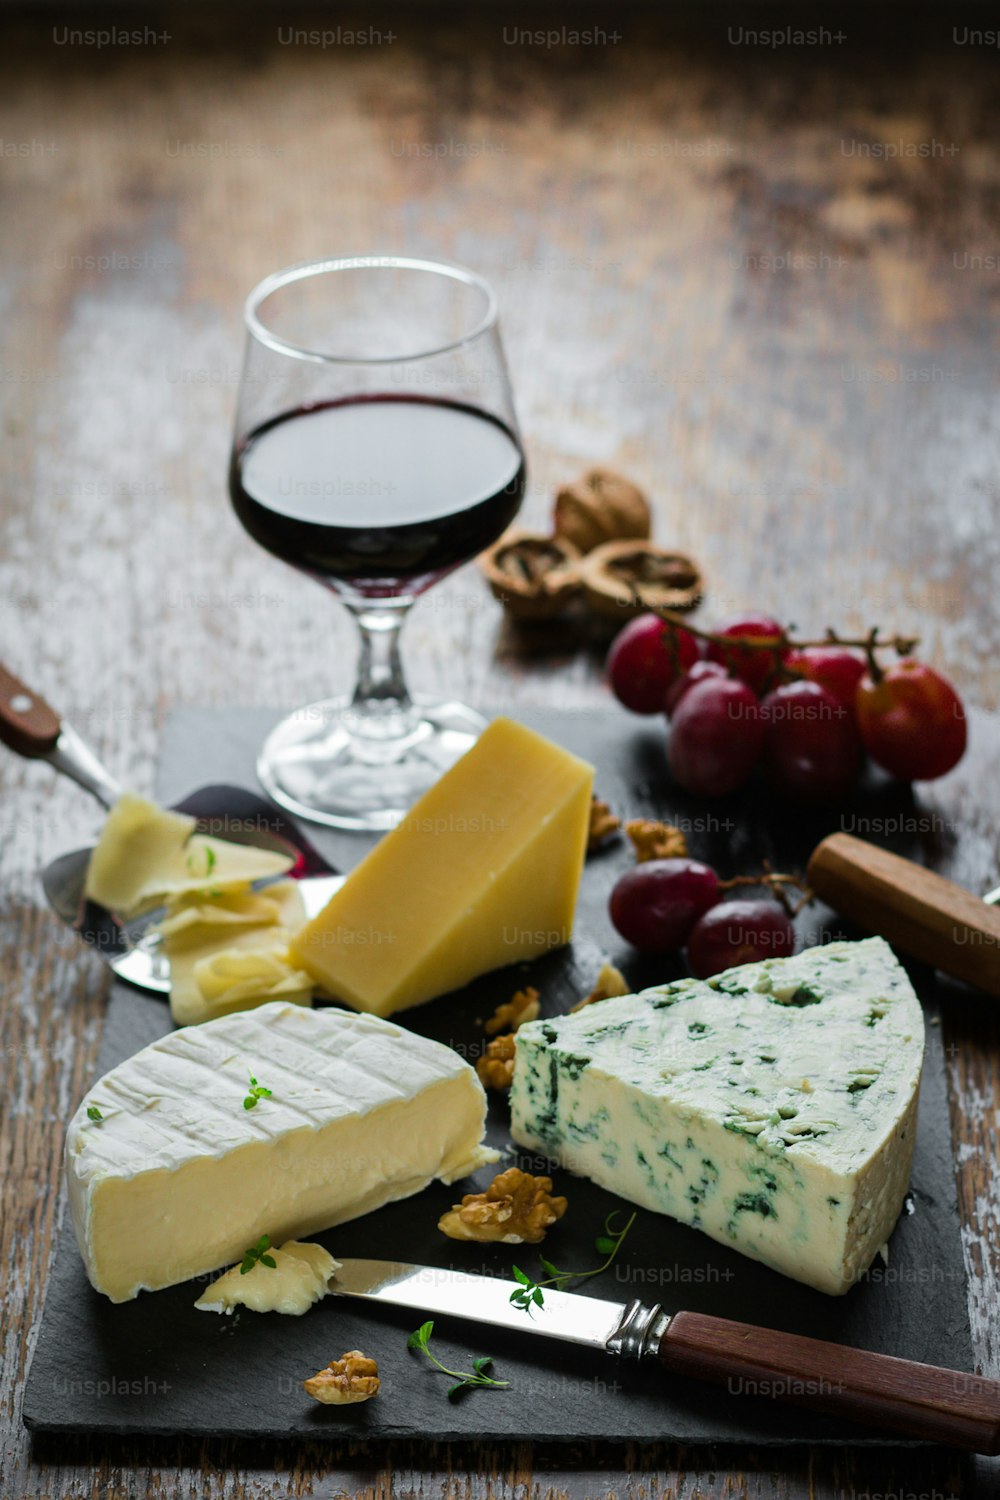 una copa de vino, queso, nueces y galletas saladas sobre una mesa de madera